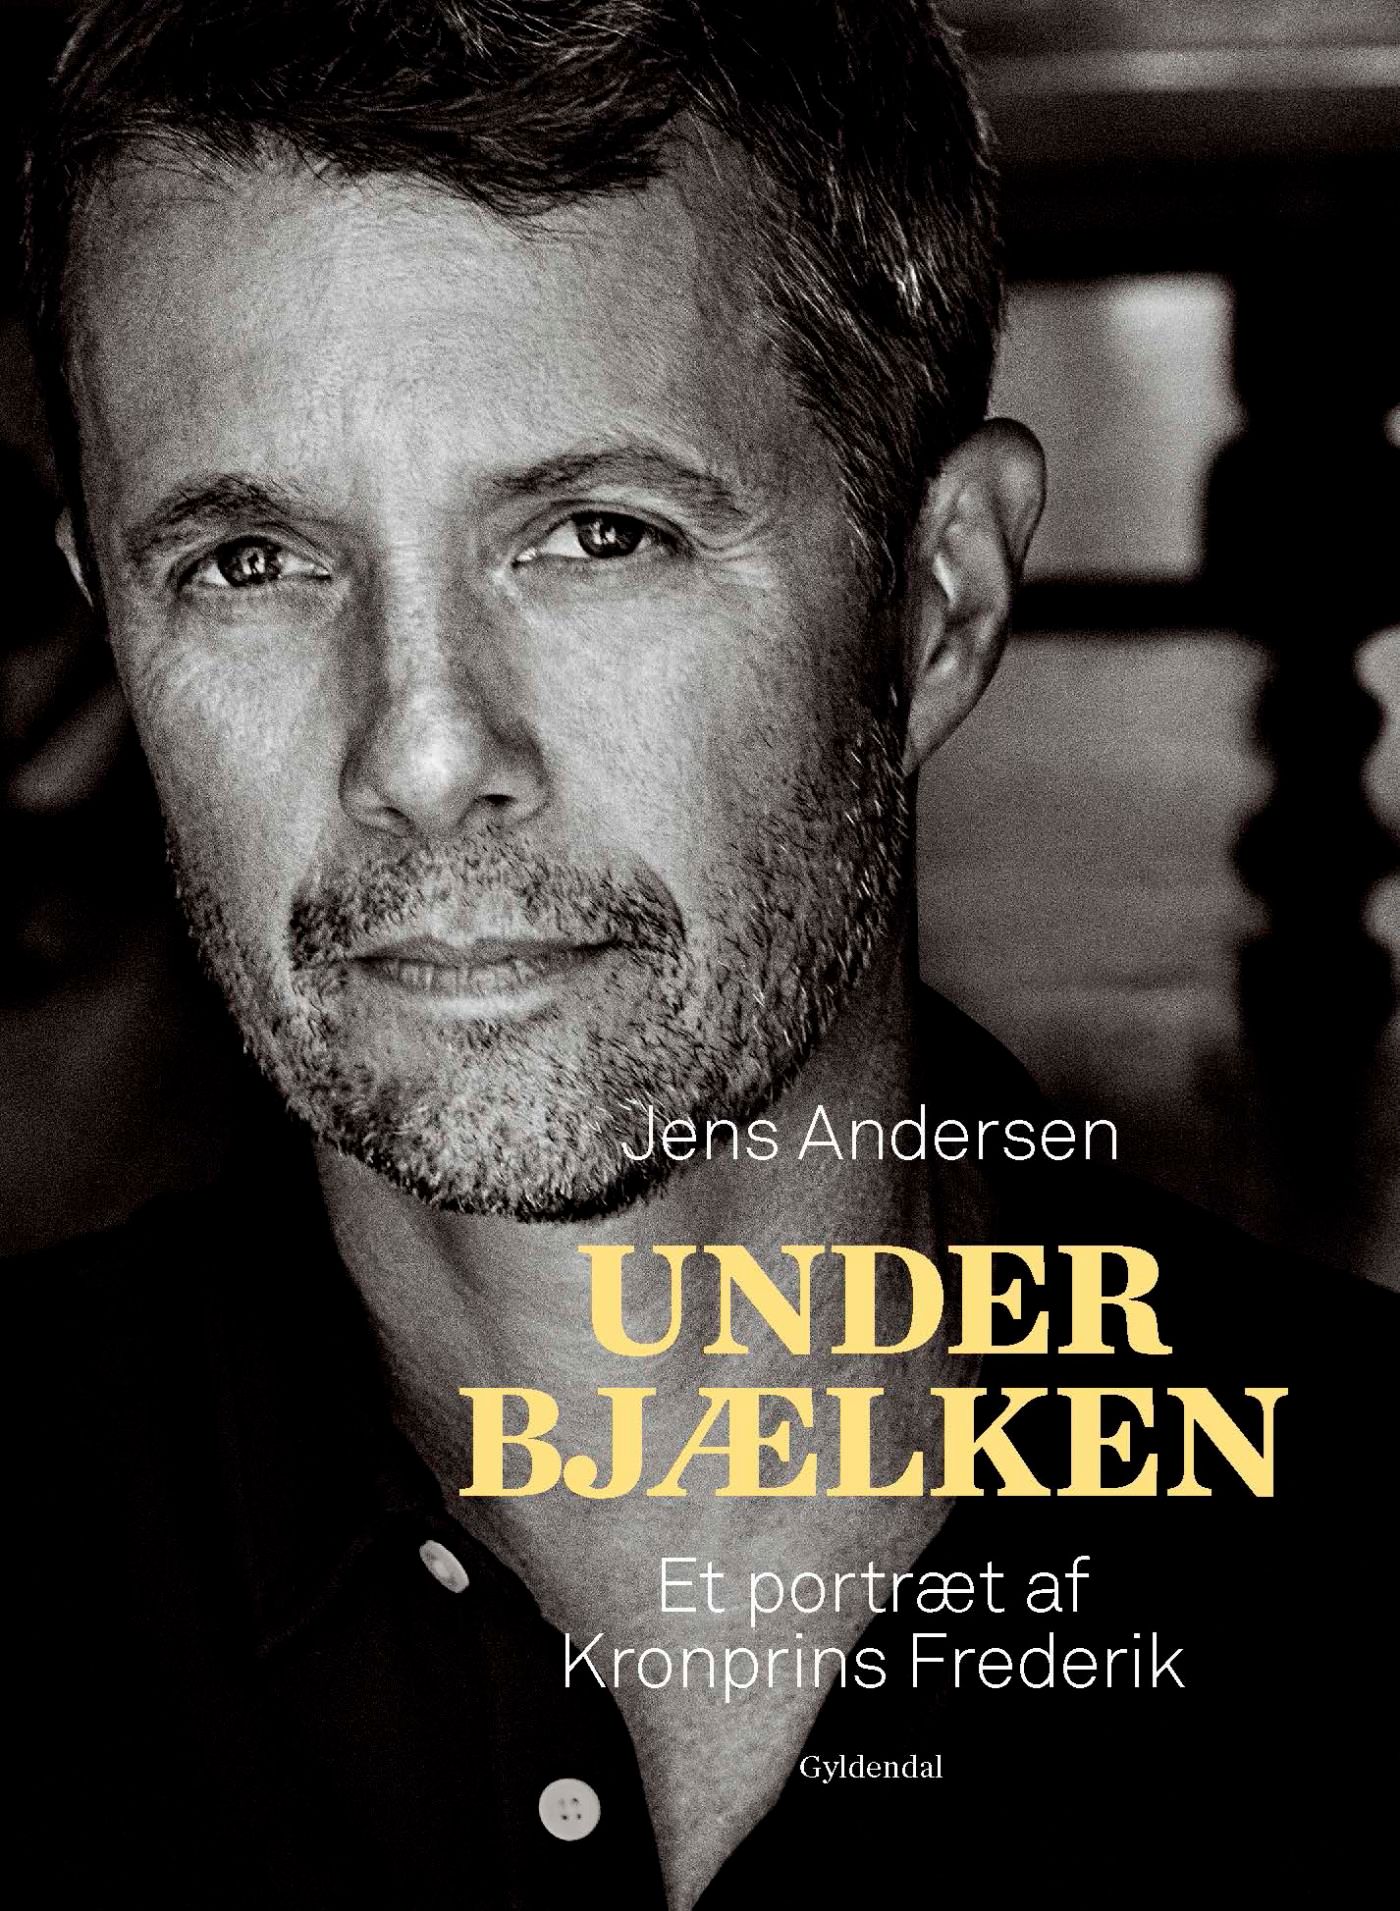 Under bjælken, eBook by Jens Andersen